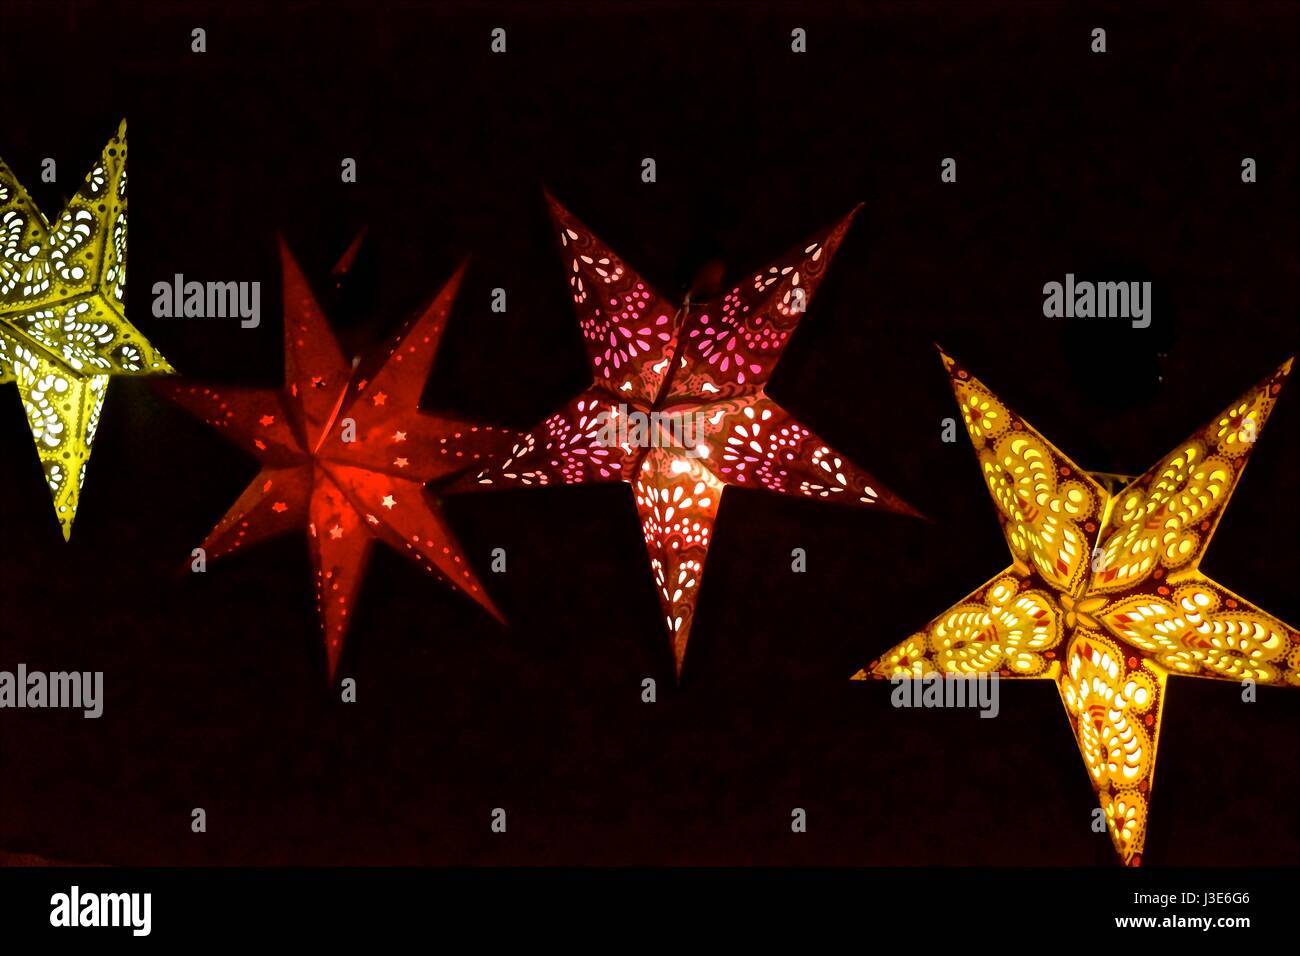 Twinkle twinkle wenig Sterne, Sterne geformte Leuchten bei einer Tauschbörse, die gefunden. Stockfoto